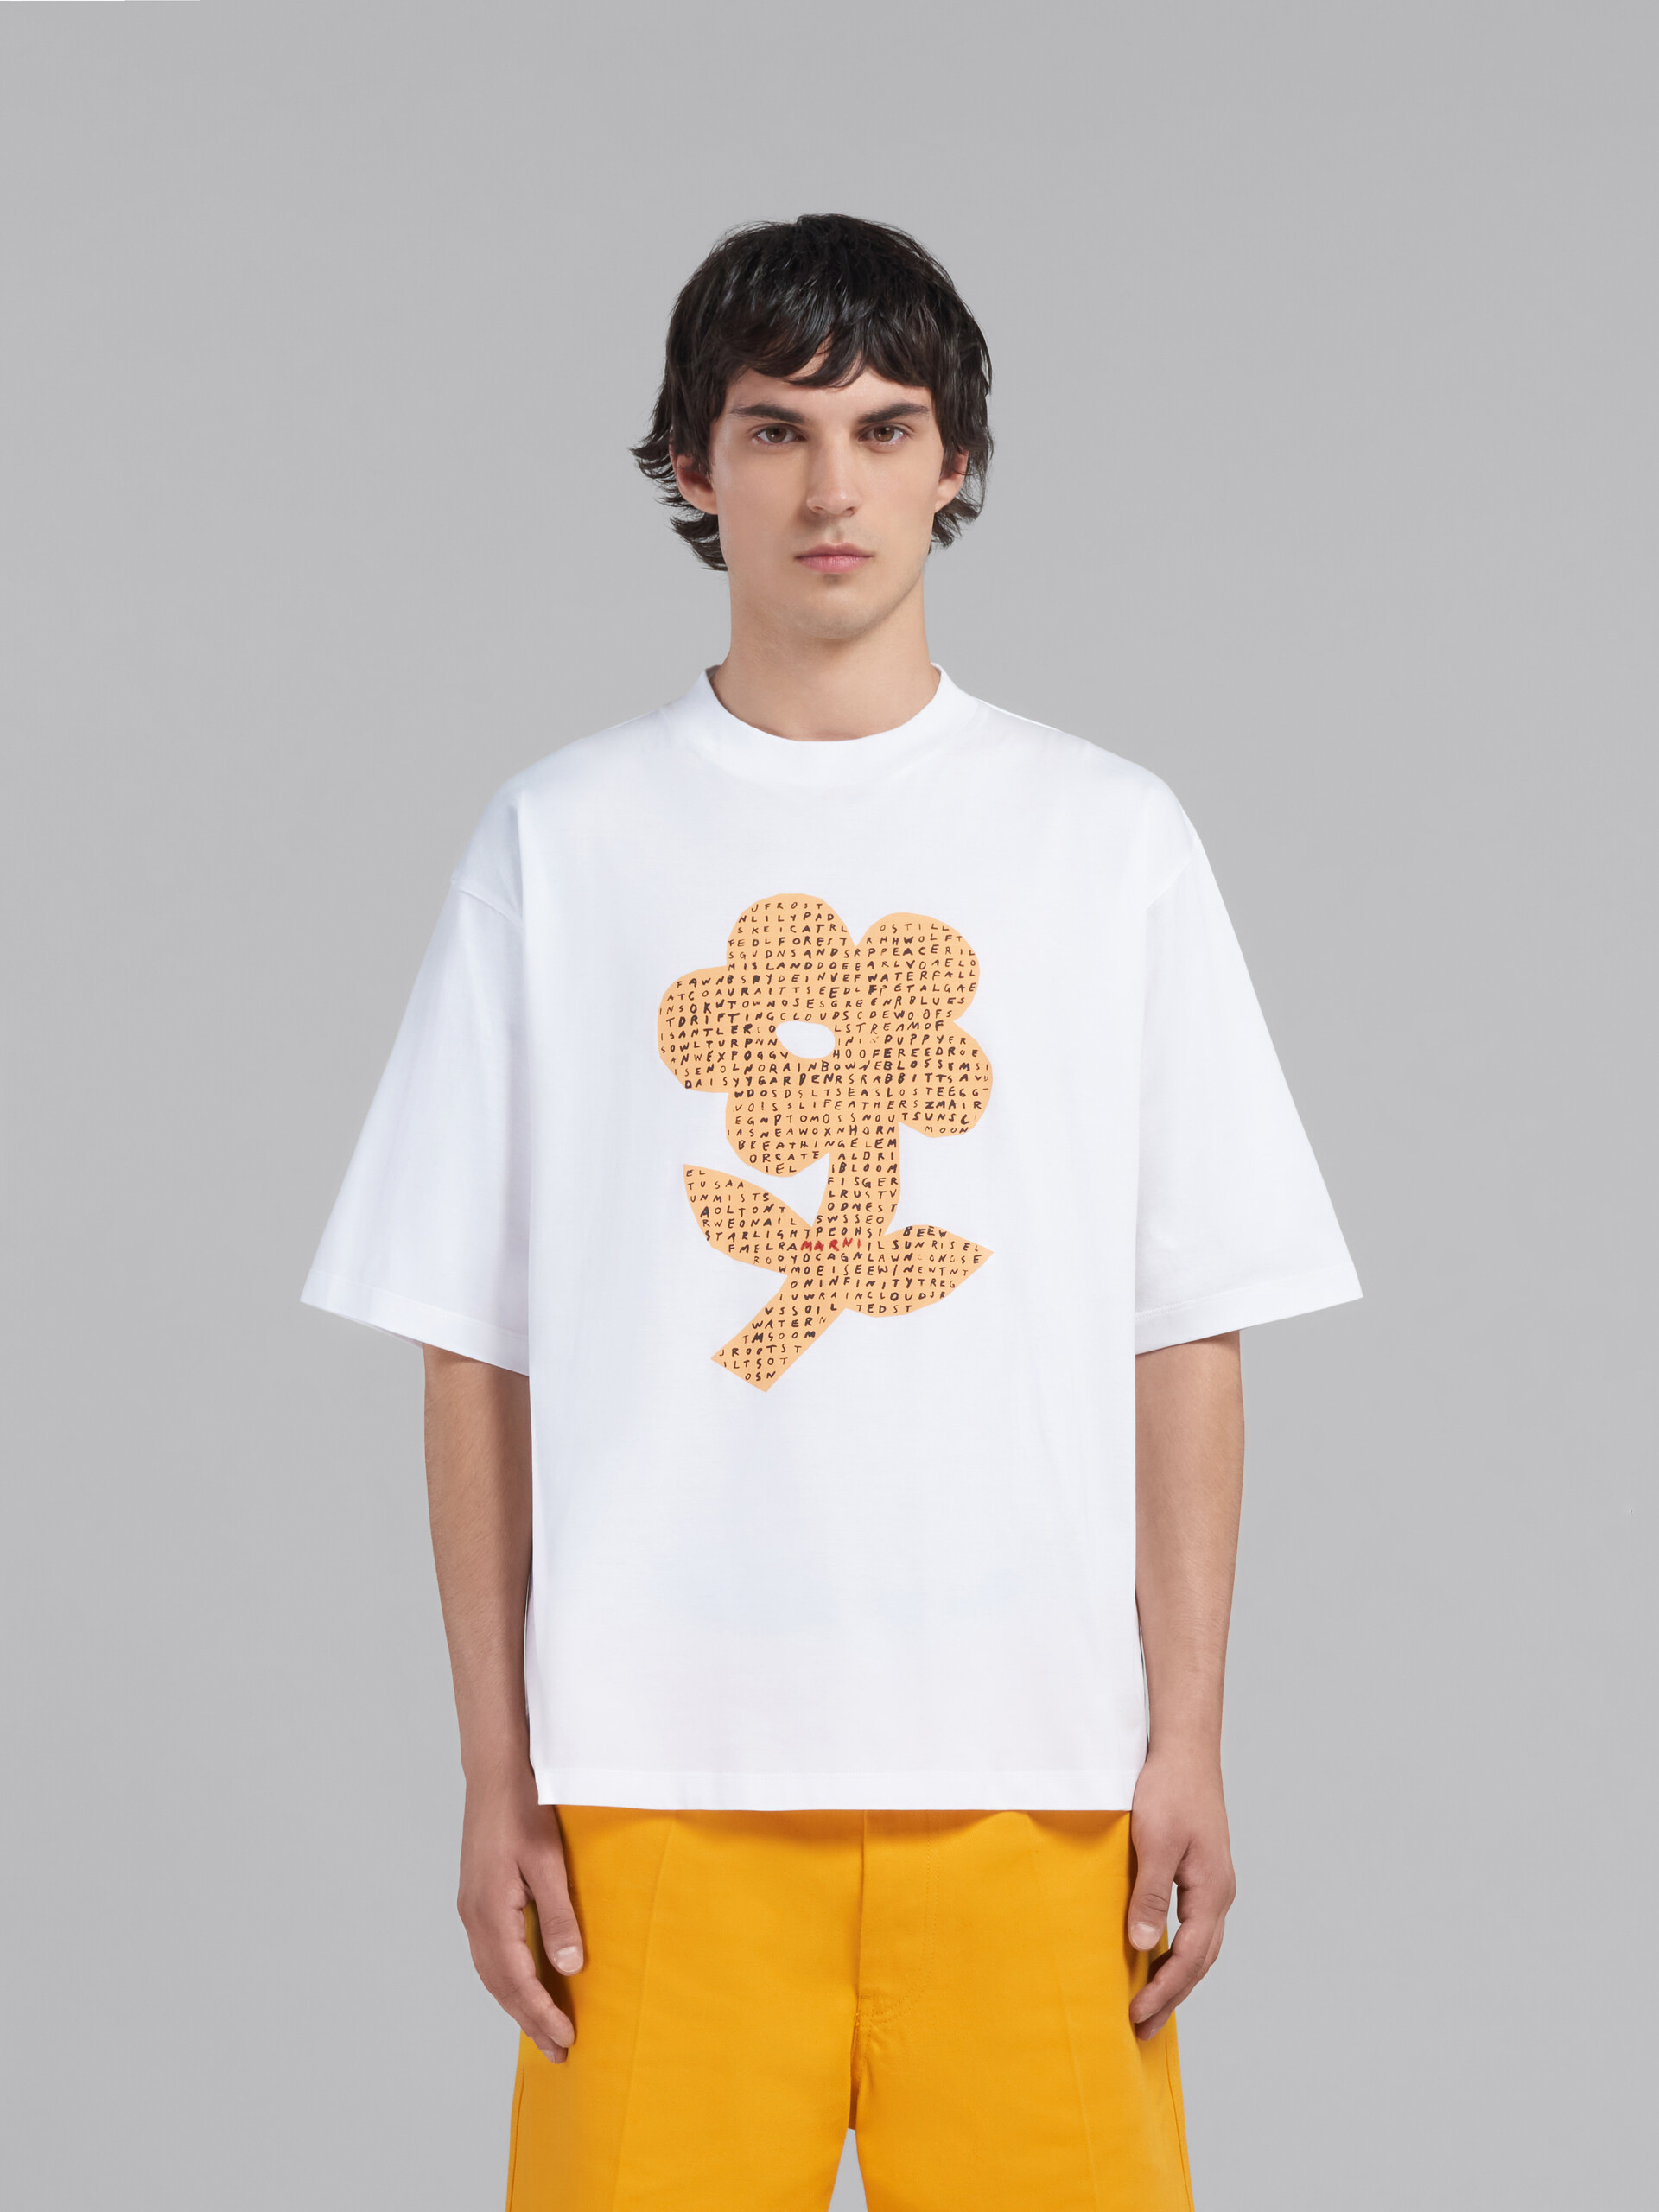 T-shirt en coton biologique blanc avec imprimé fleur et mots mêlés - T-shirts - Image 2